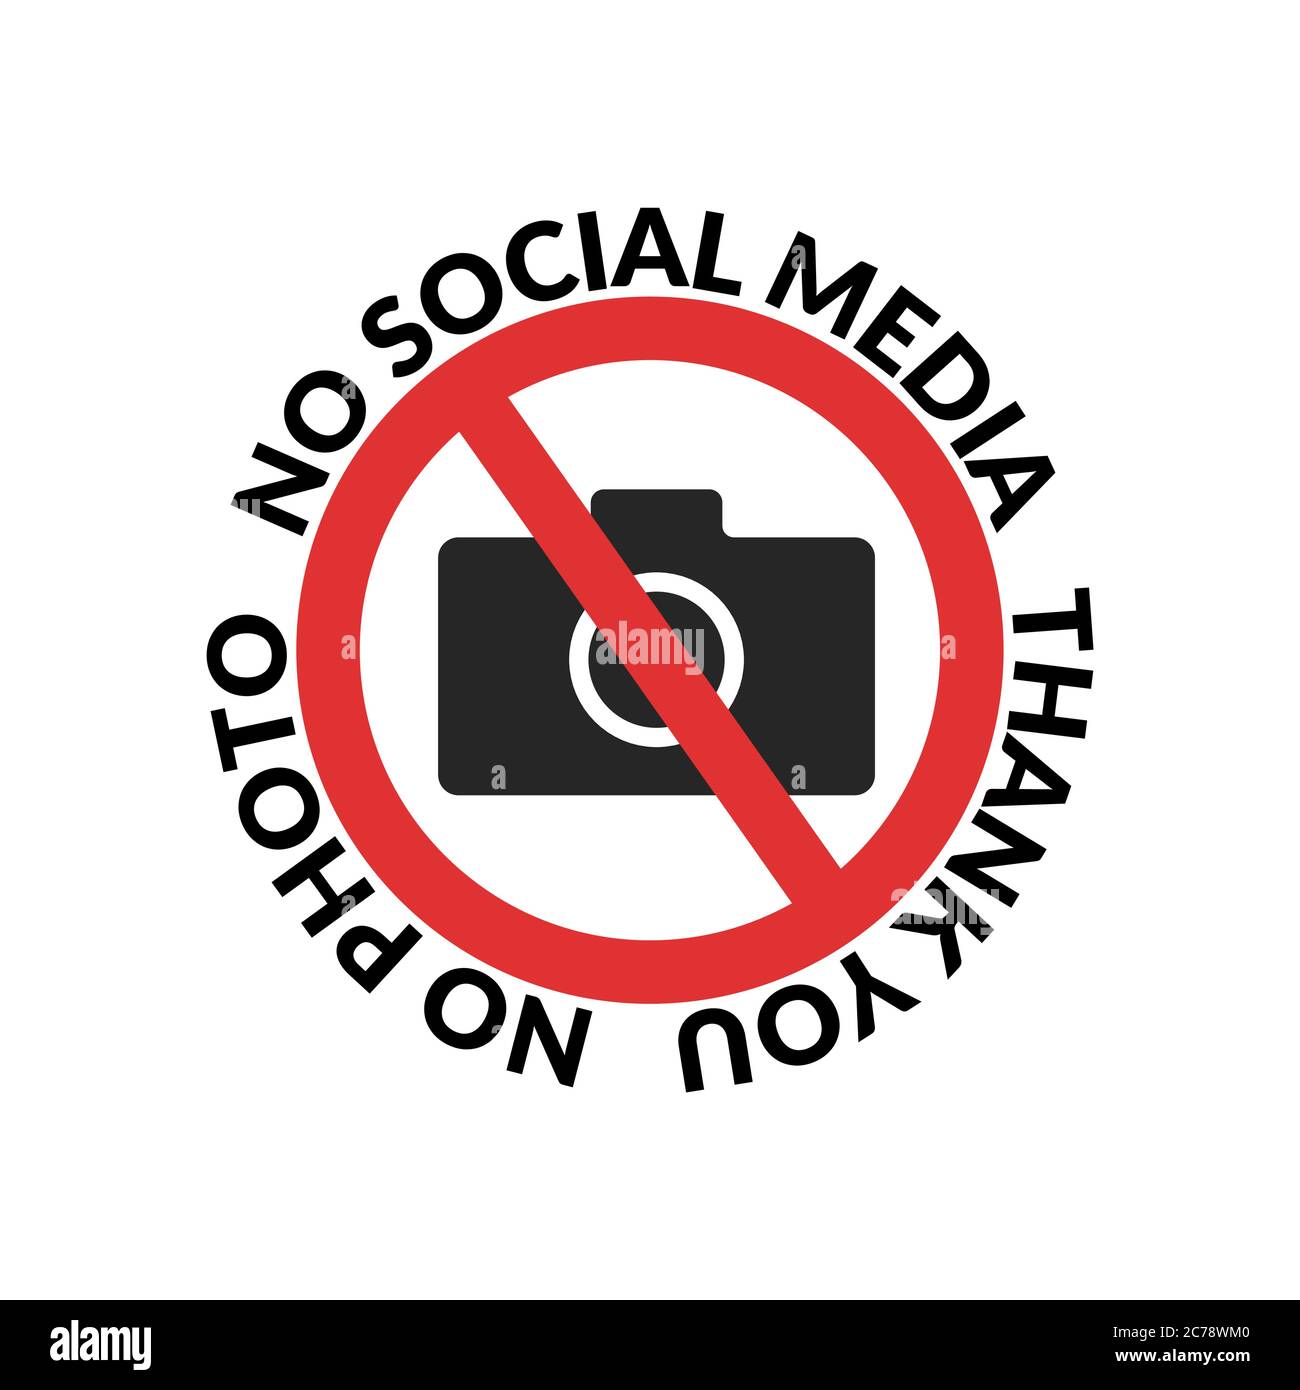 Keine sozialen Medien, danke Zitat Design für T-Shirt. Fotokamera verboten. Symbol für gesperrte Kamera. Fotos dürfen nicht aufgenommen werden Stock Vektor